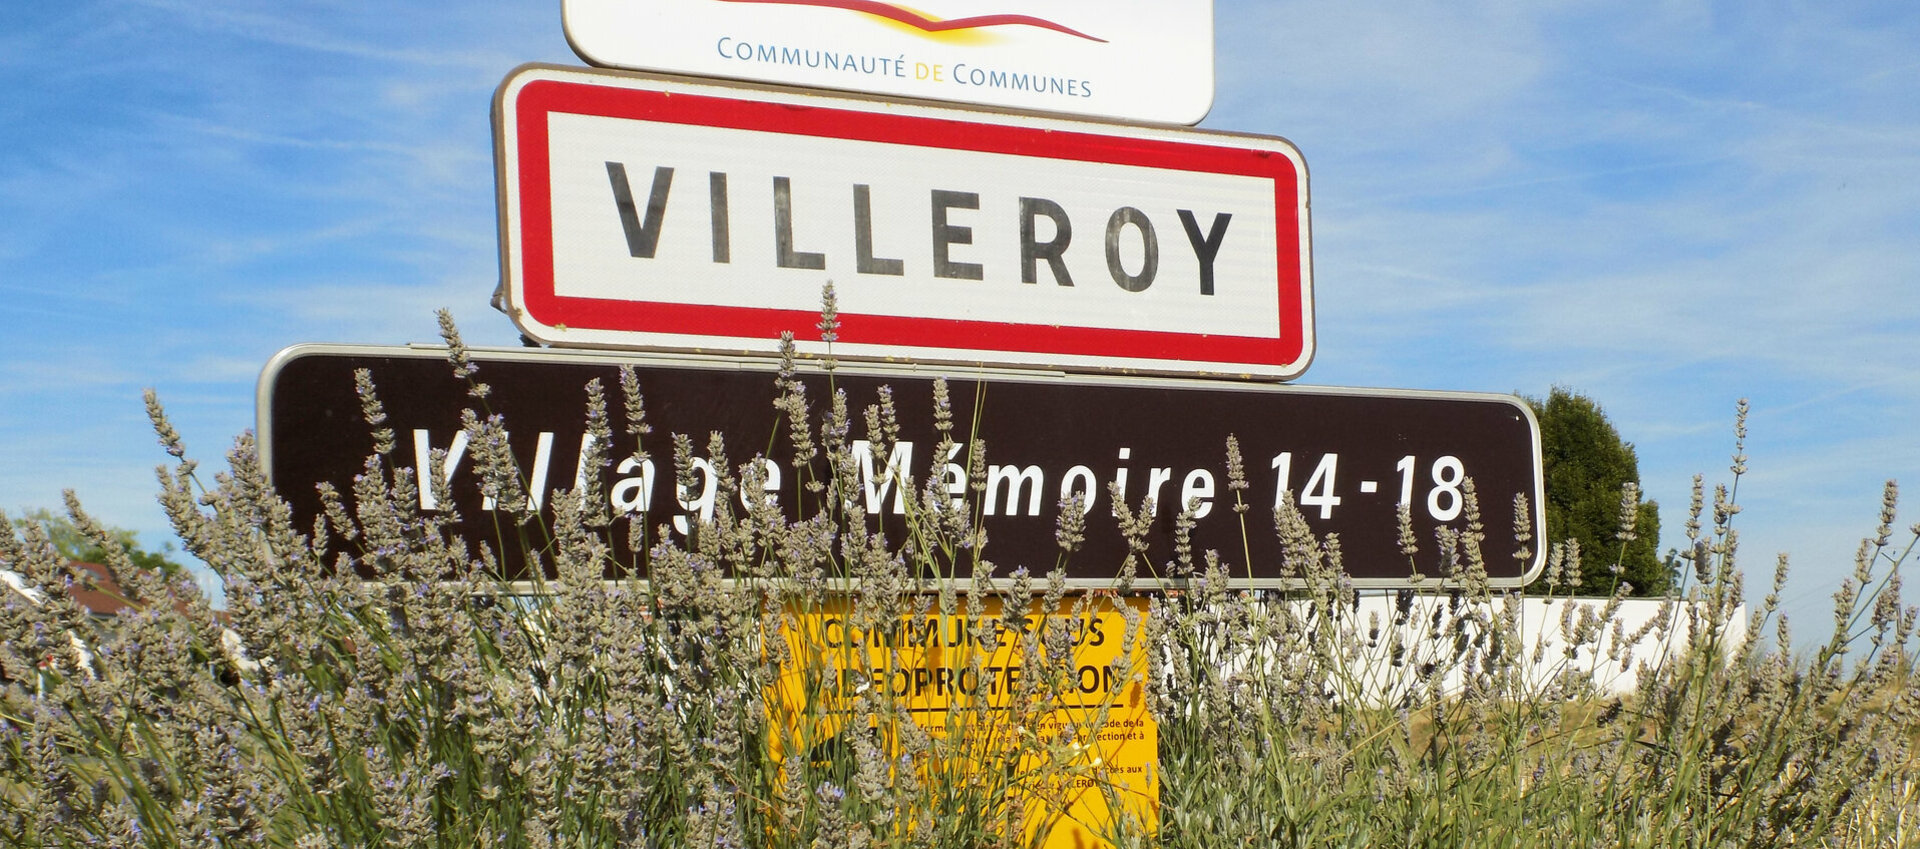 Mentions légales de la commune de Villeroy (77).